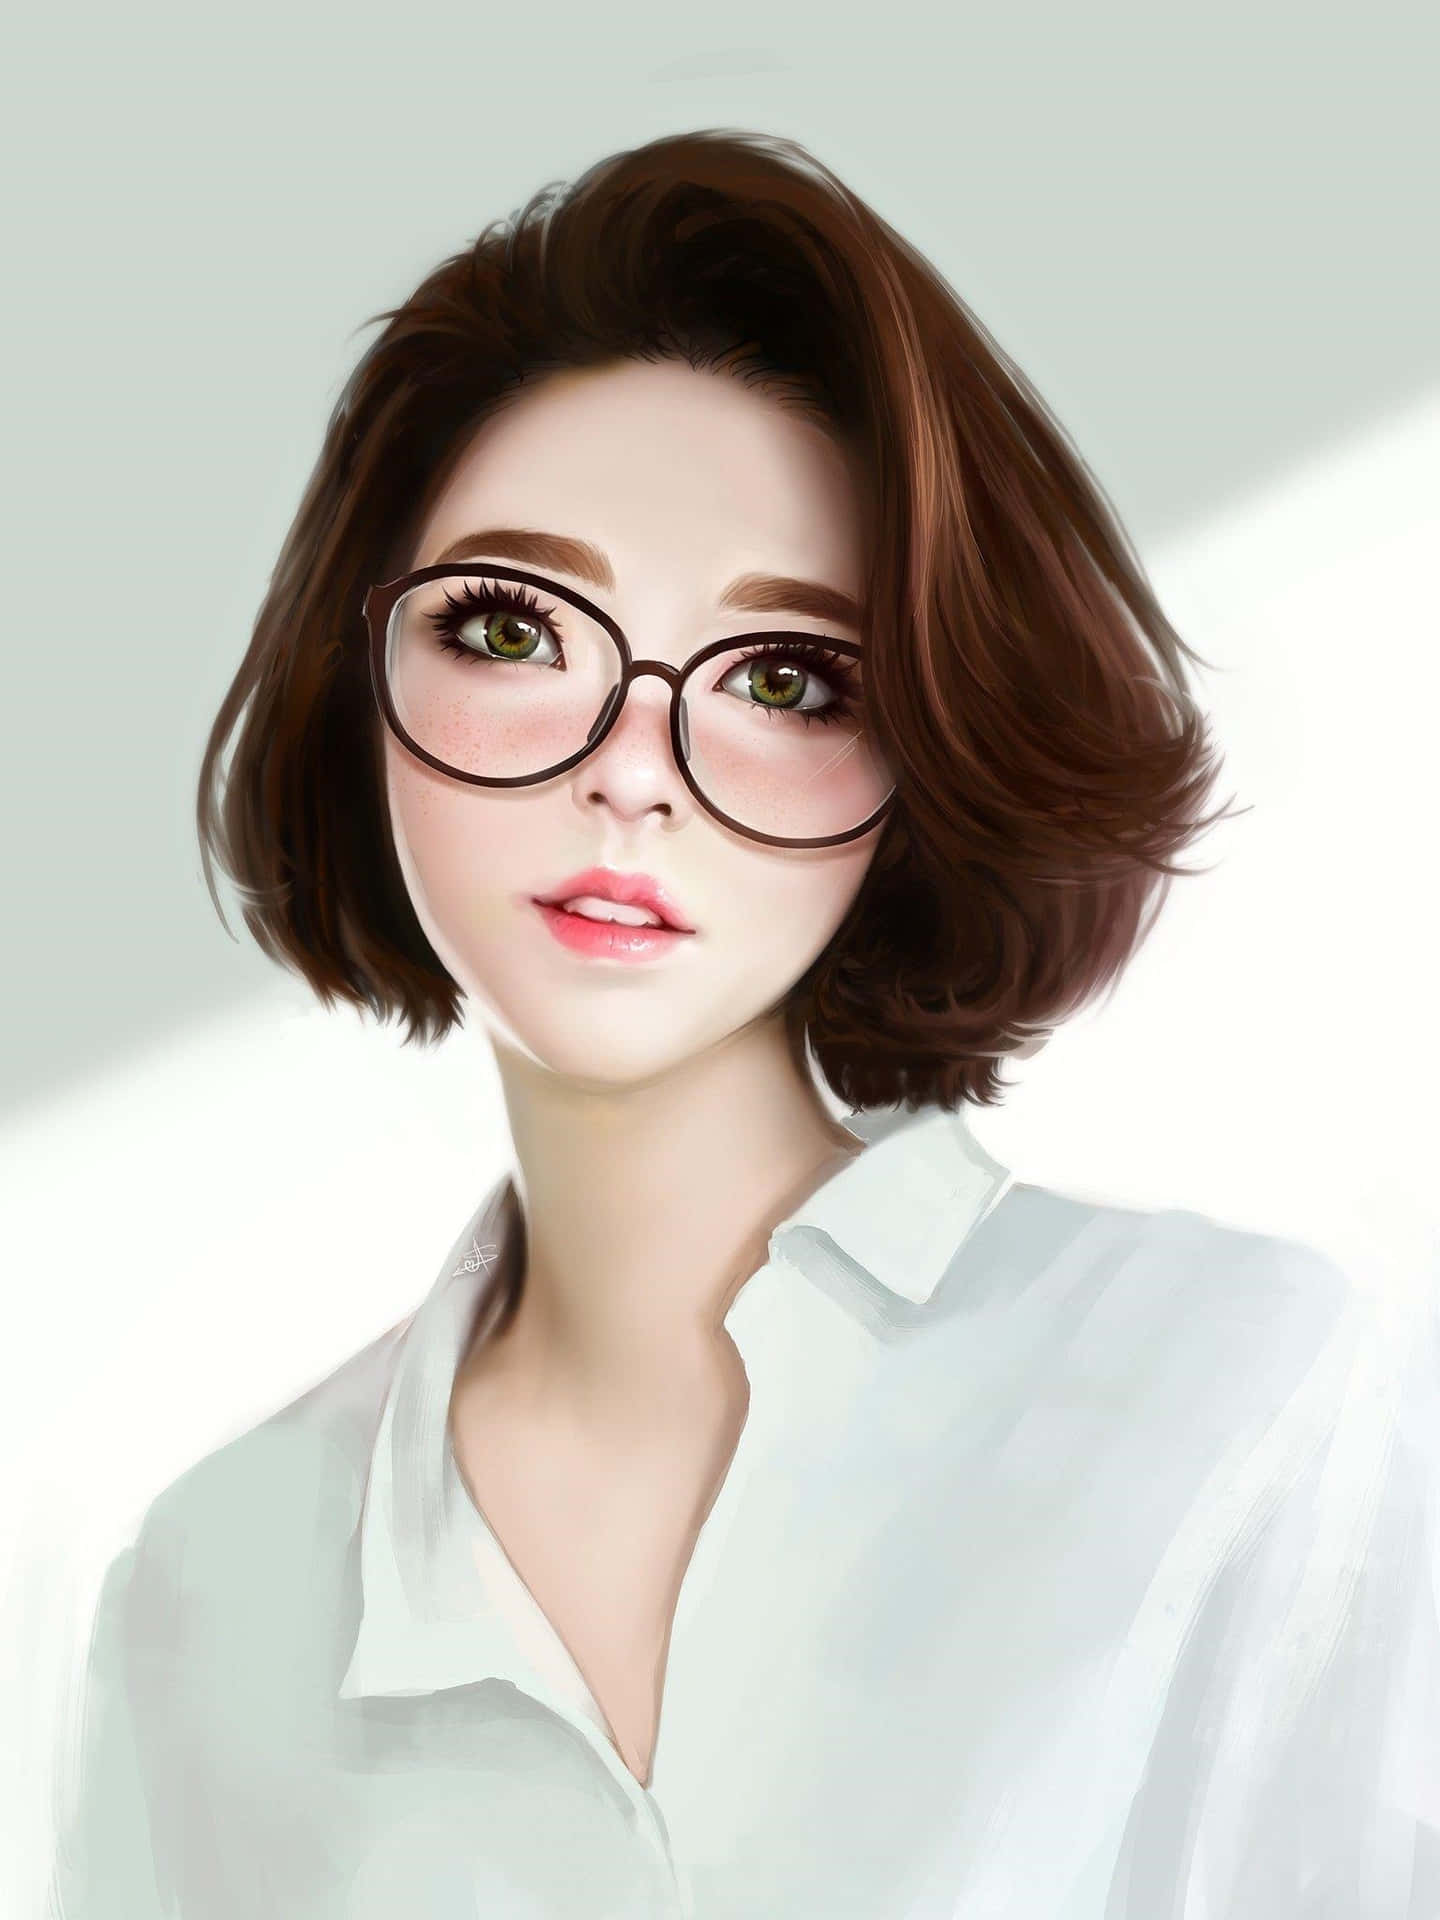 Chicacoreana De Anime Con Gafas De Lectura. Fondo de pantalla